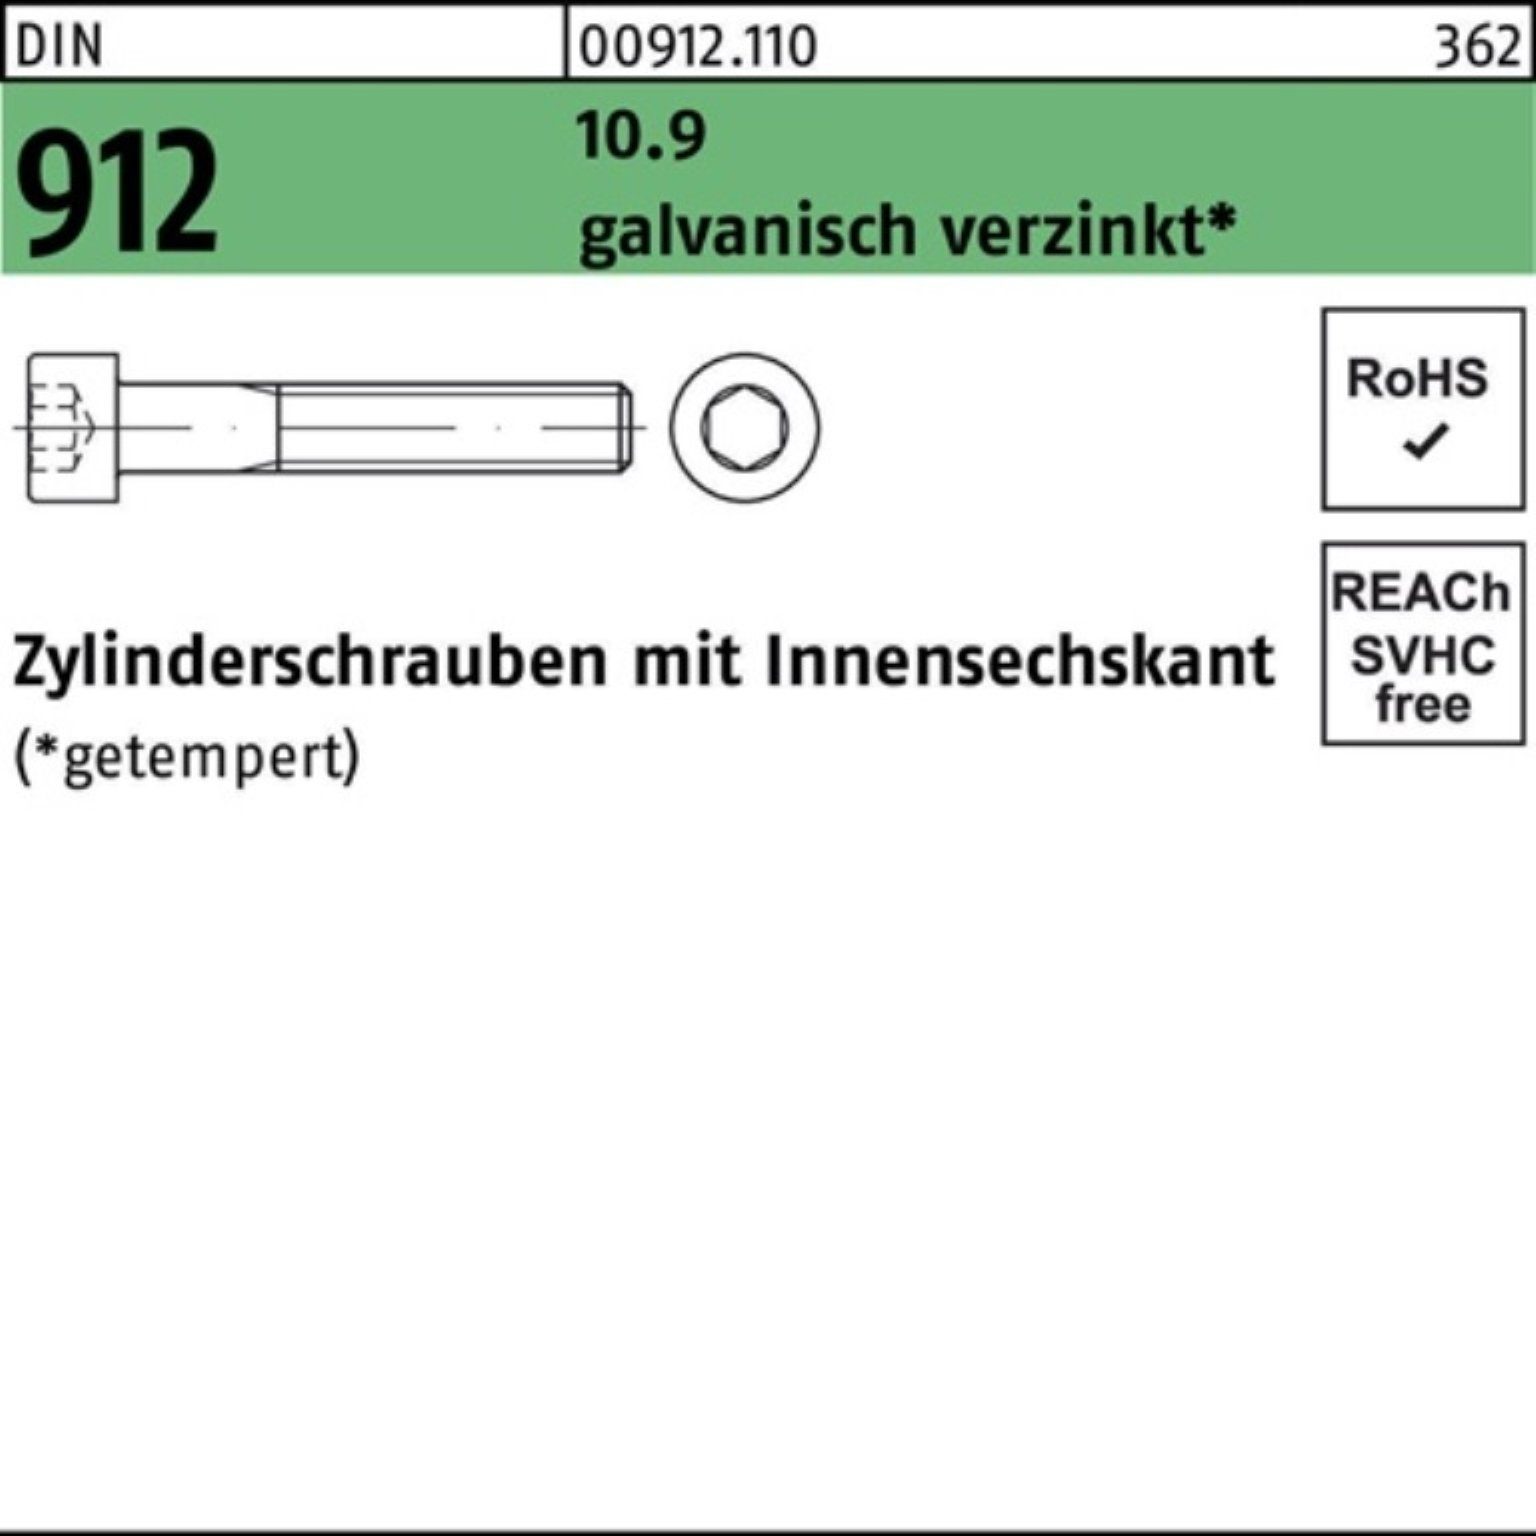 Das Beste dieser Saison Reyher Zylinderschraube 100er Pack 912 Zylinderschraube M12x270 DIN galv.verz. 10.9 Innen-6kt